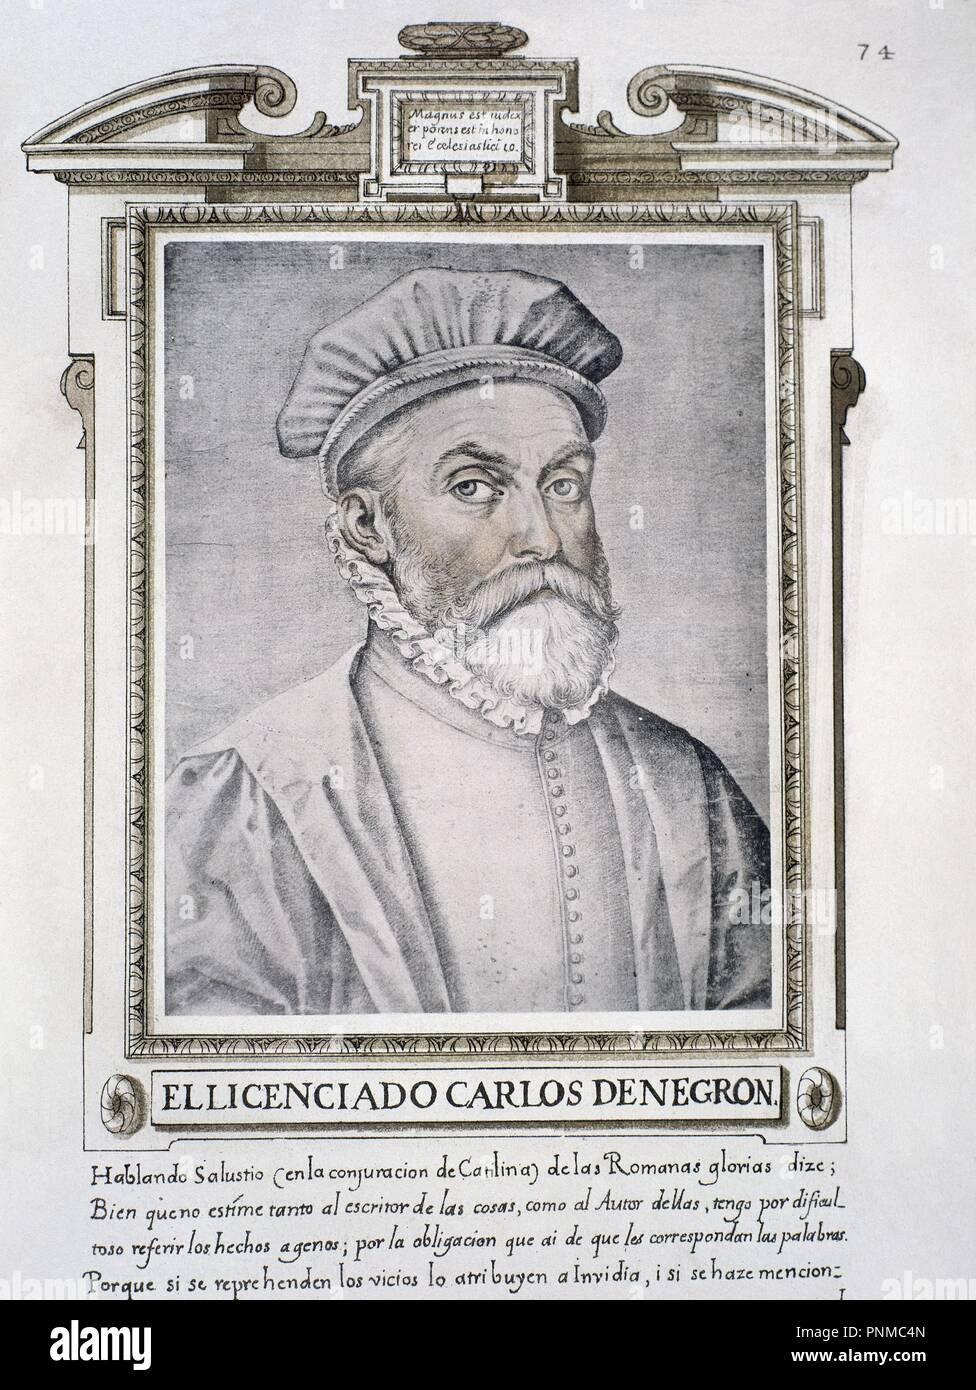 CARLOS DE NEGRON - LIBRO DE RETRATOS DE ILUSTRES Y MEMORABLES VARONES - 1599. Author: PACHECO, FRANCISCO. Location: BIBLIOTECA NACIONAL-COLECCION. MADRID. SPAIN. Stock Photo